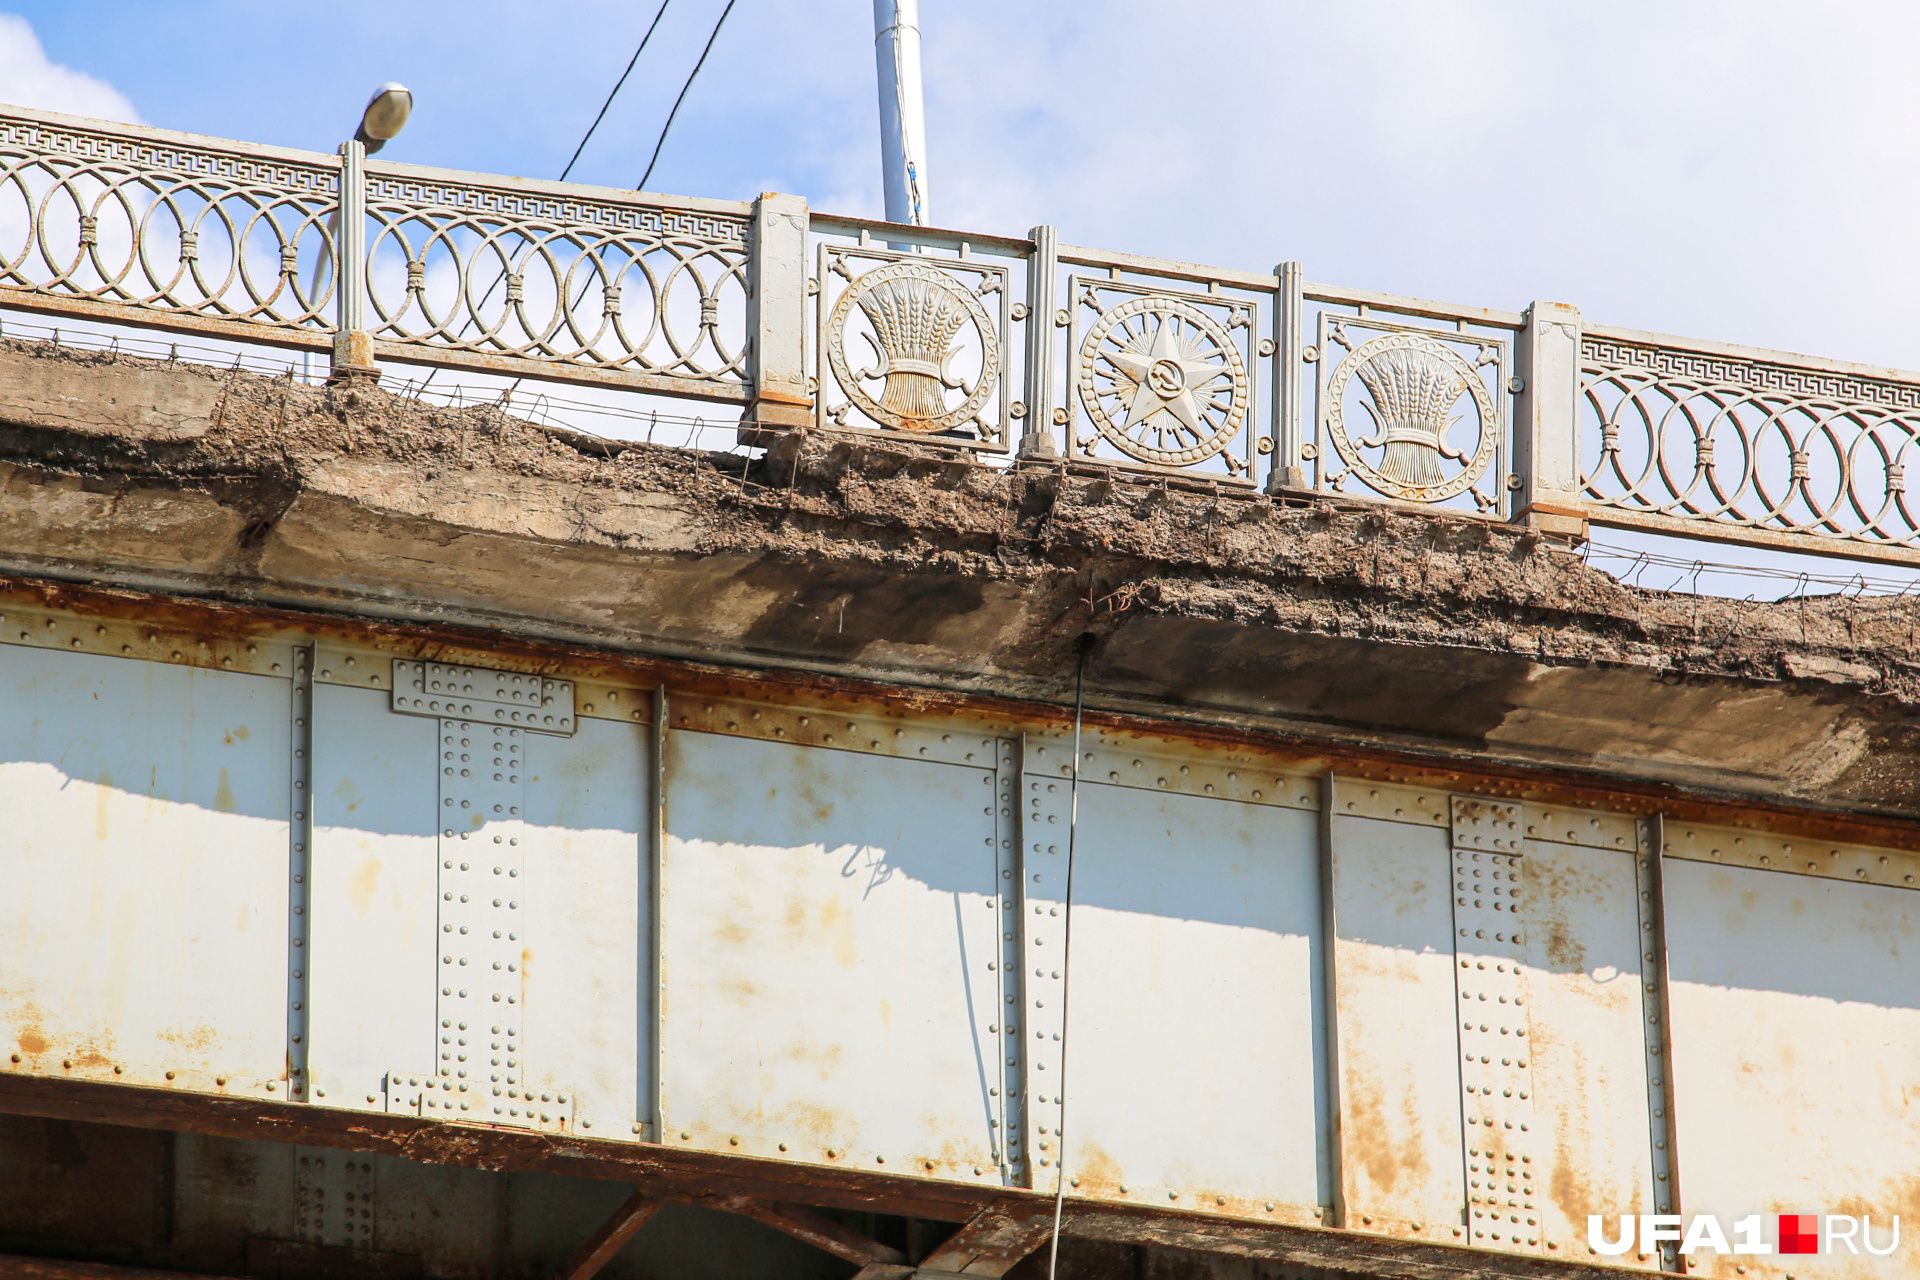 Периодически власти закрывают старый Бельский мост, чтобы уменьшить нагрузку и предотвратить разрушения